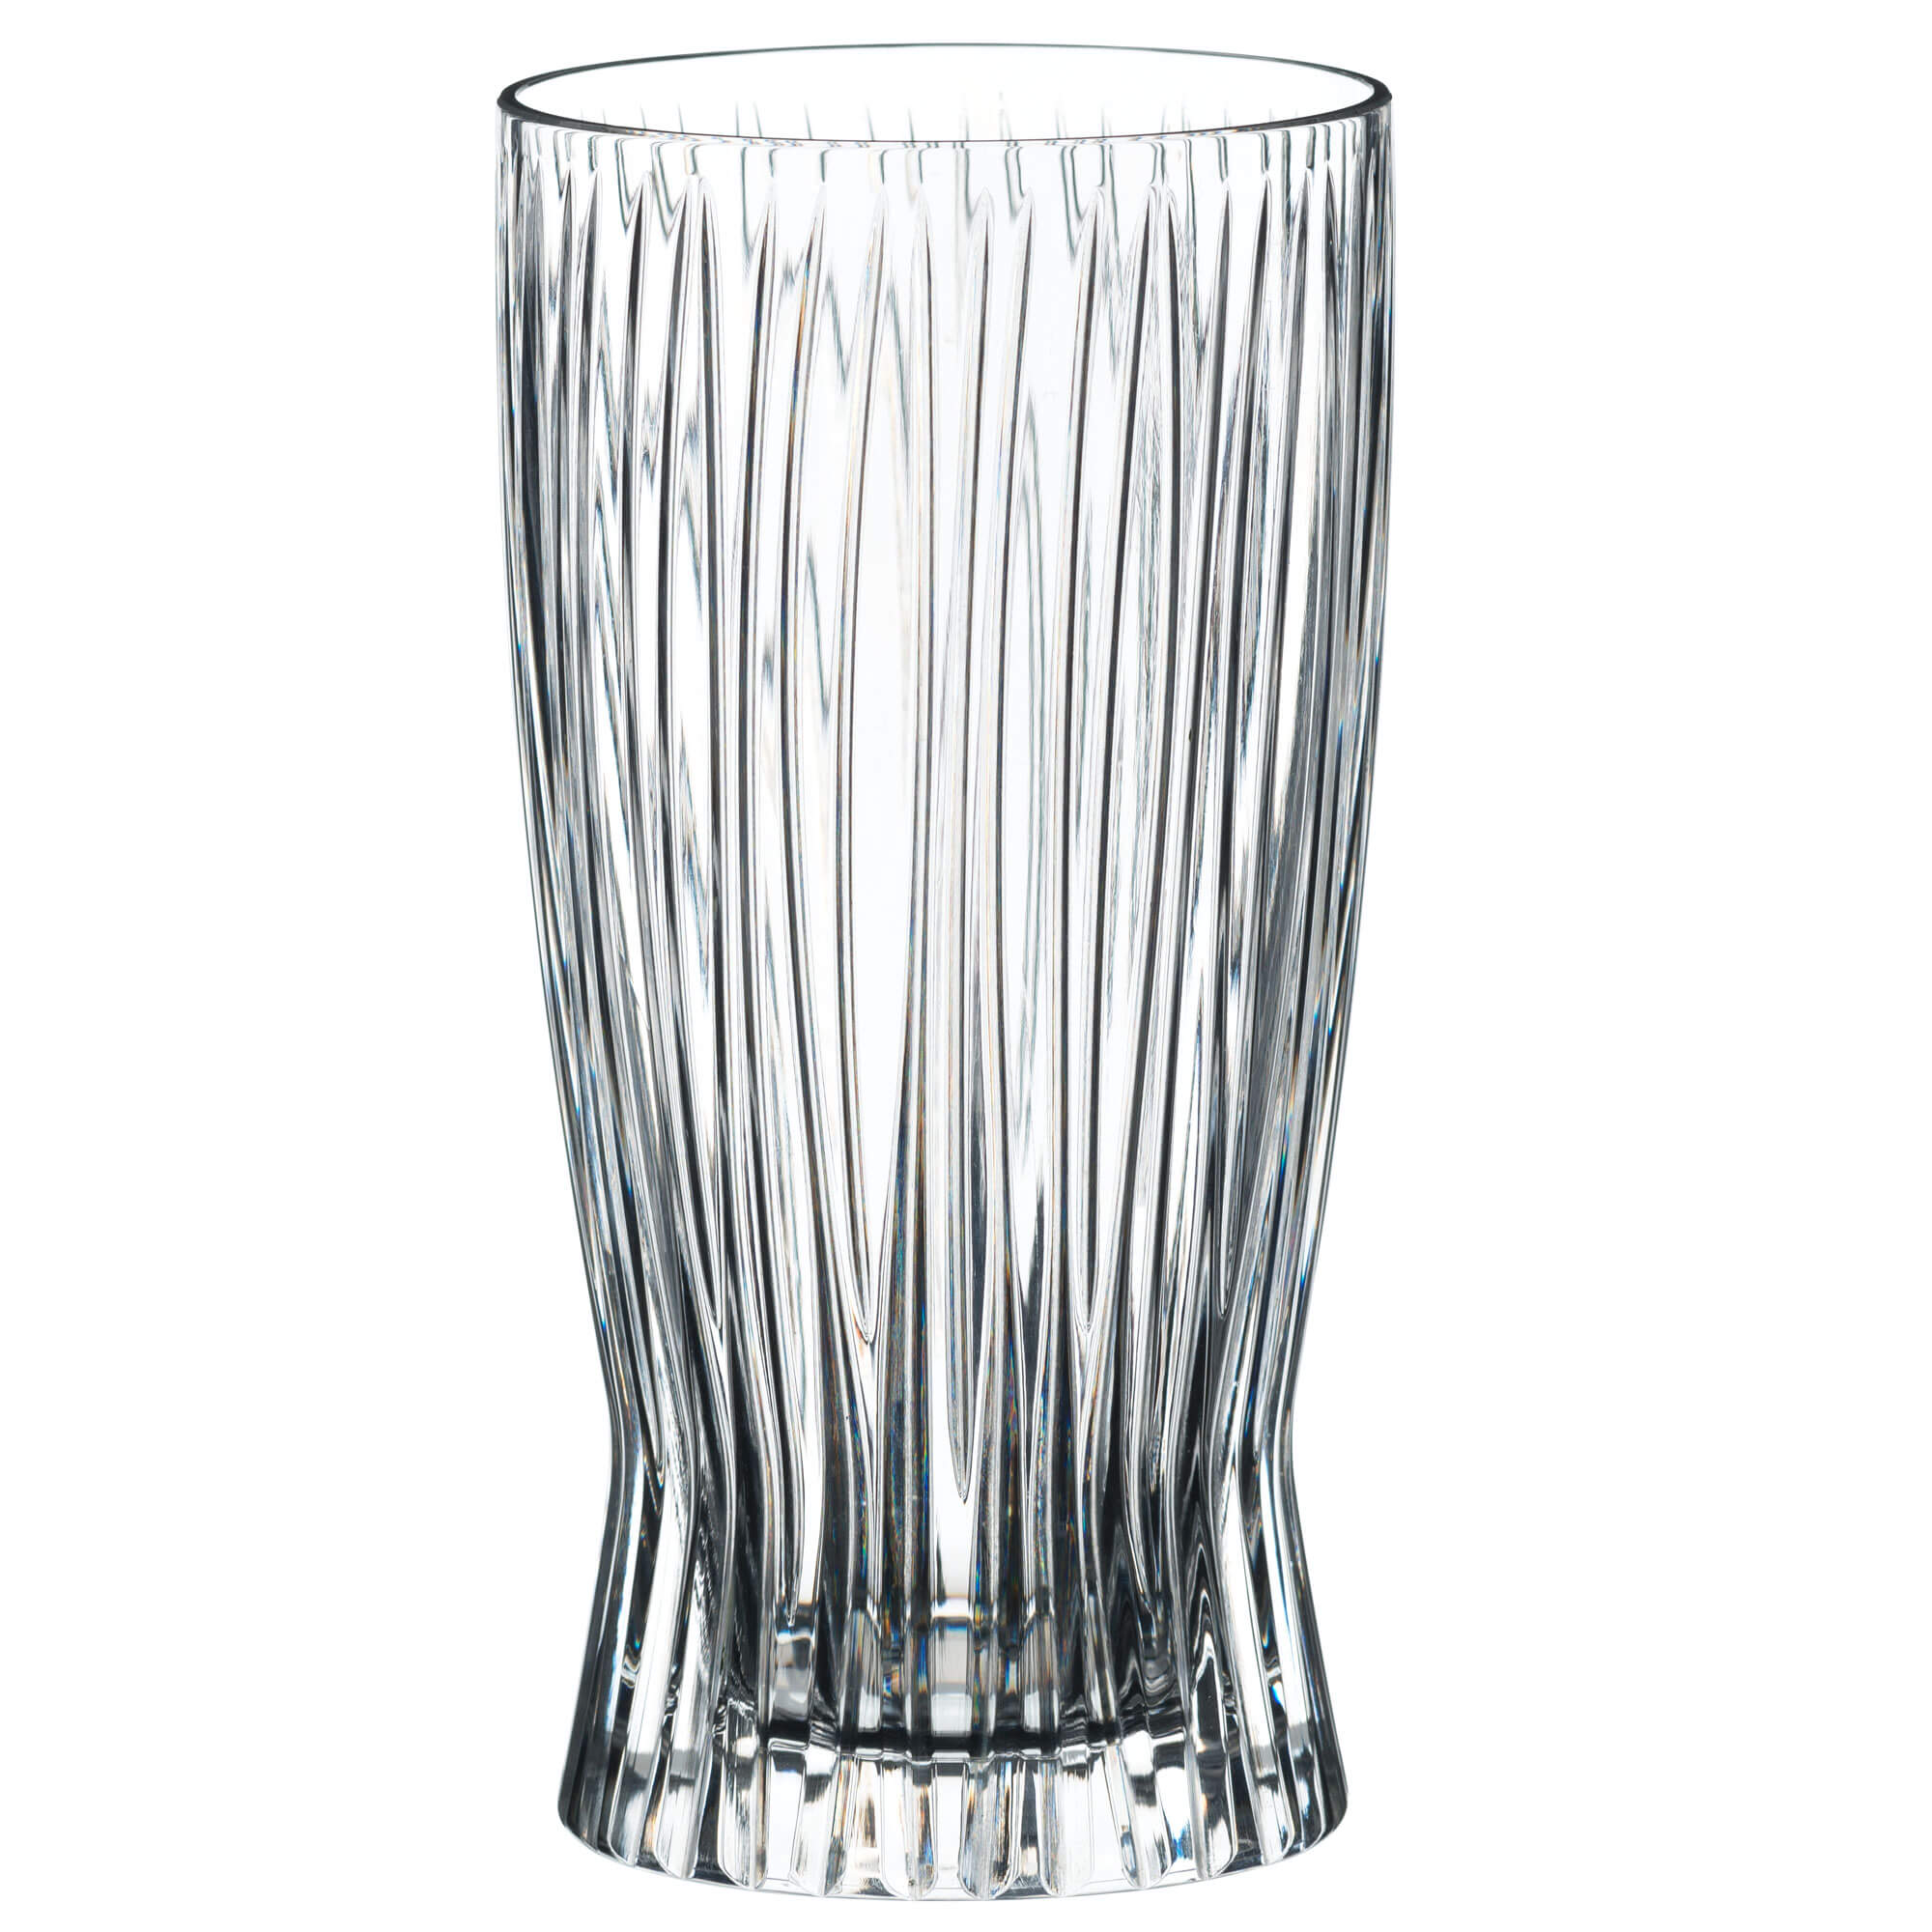 Longdrink glass, Riedel - 375ml (2 pcs.)